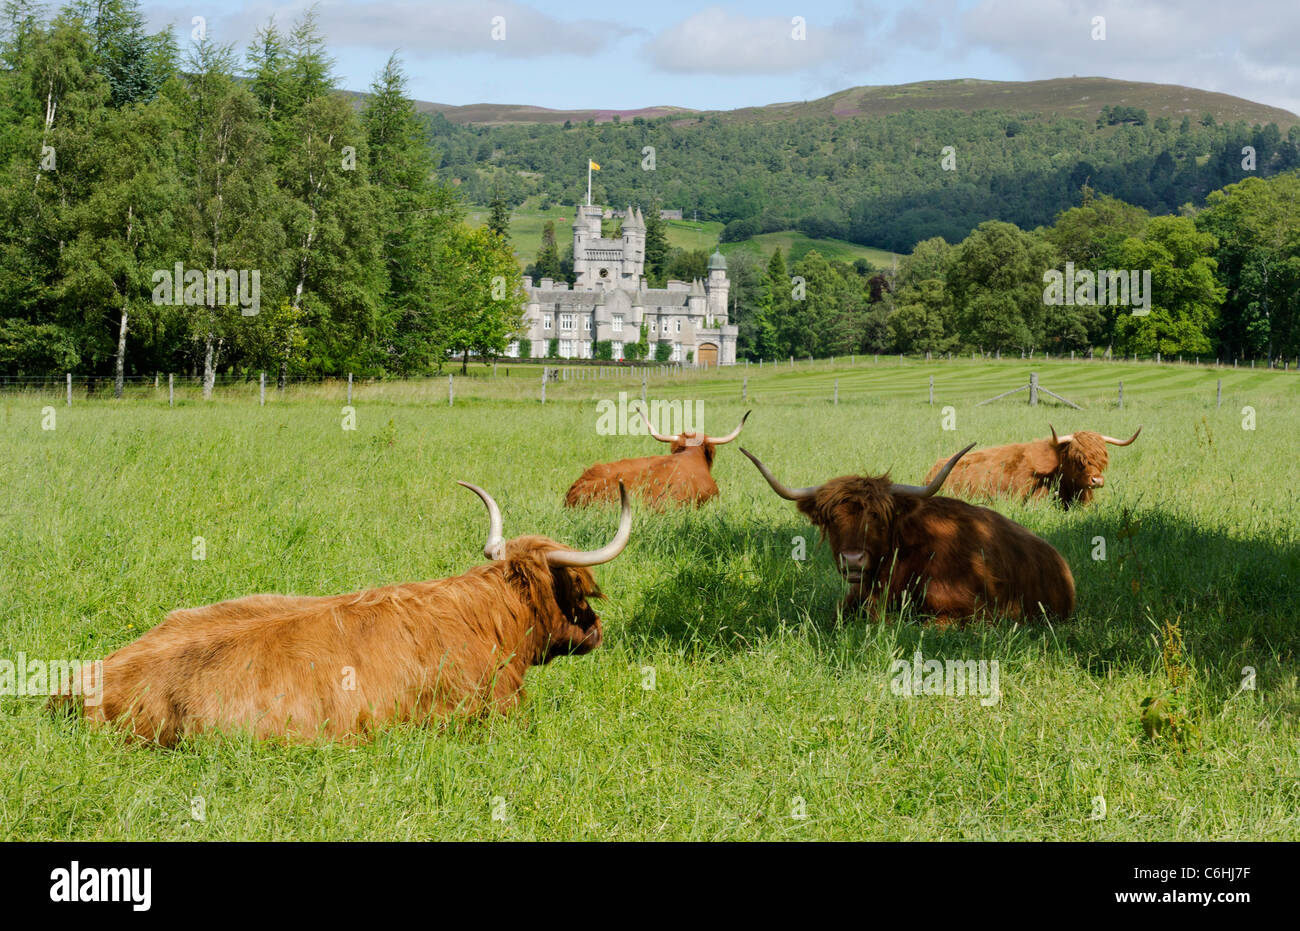 El castillo de Balmoral Royal Deeside - Queen's residencia vista con highland vacas en primer plano Foto de stock